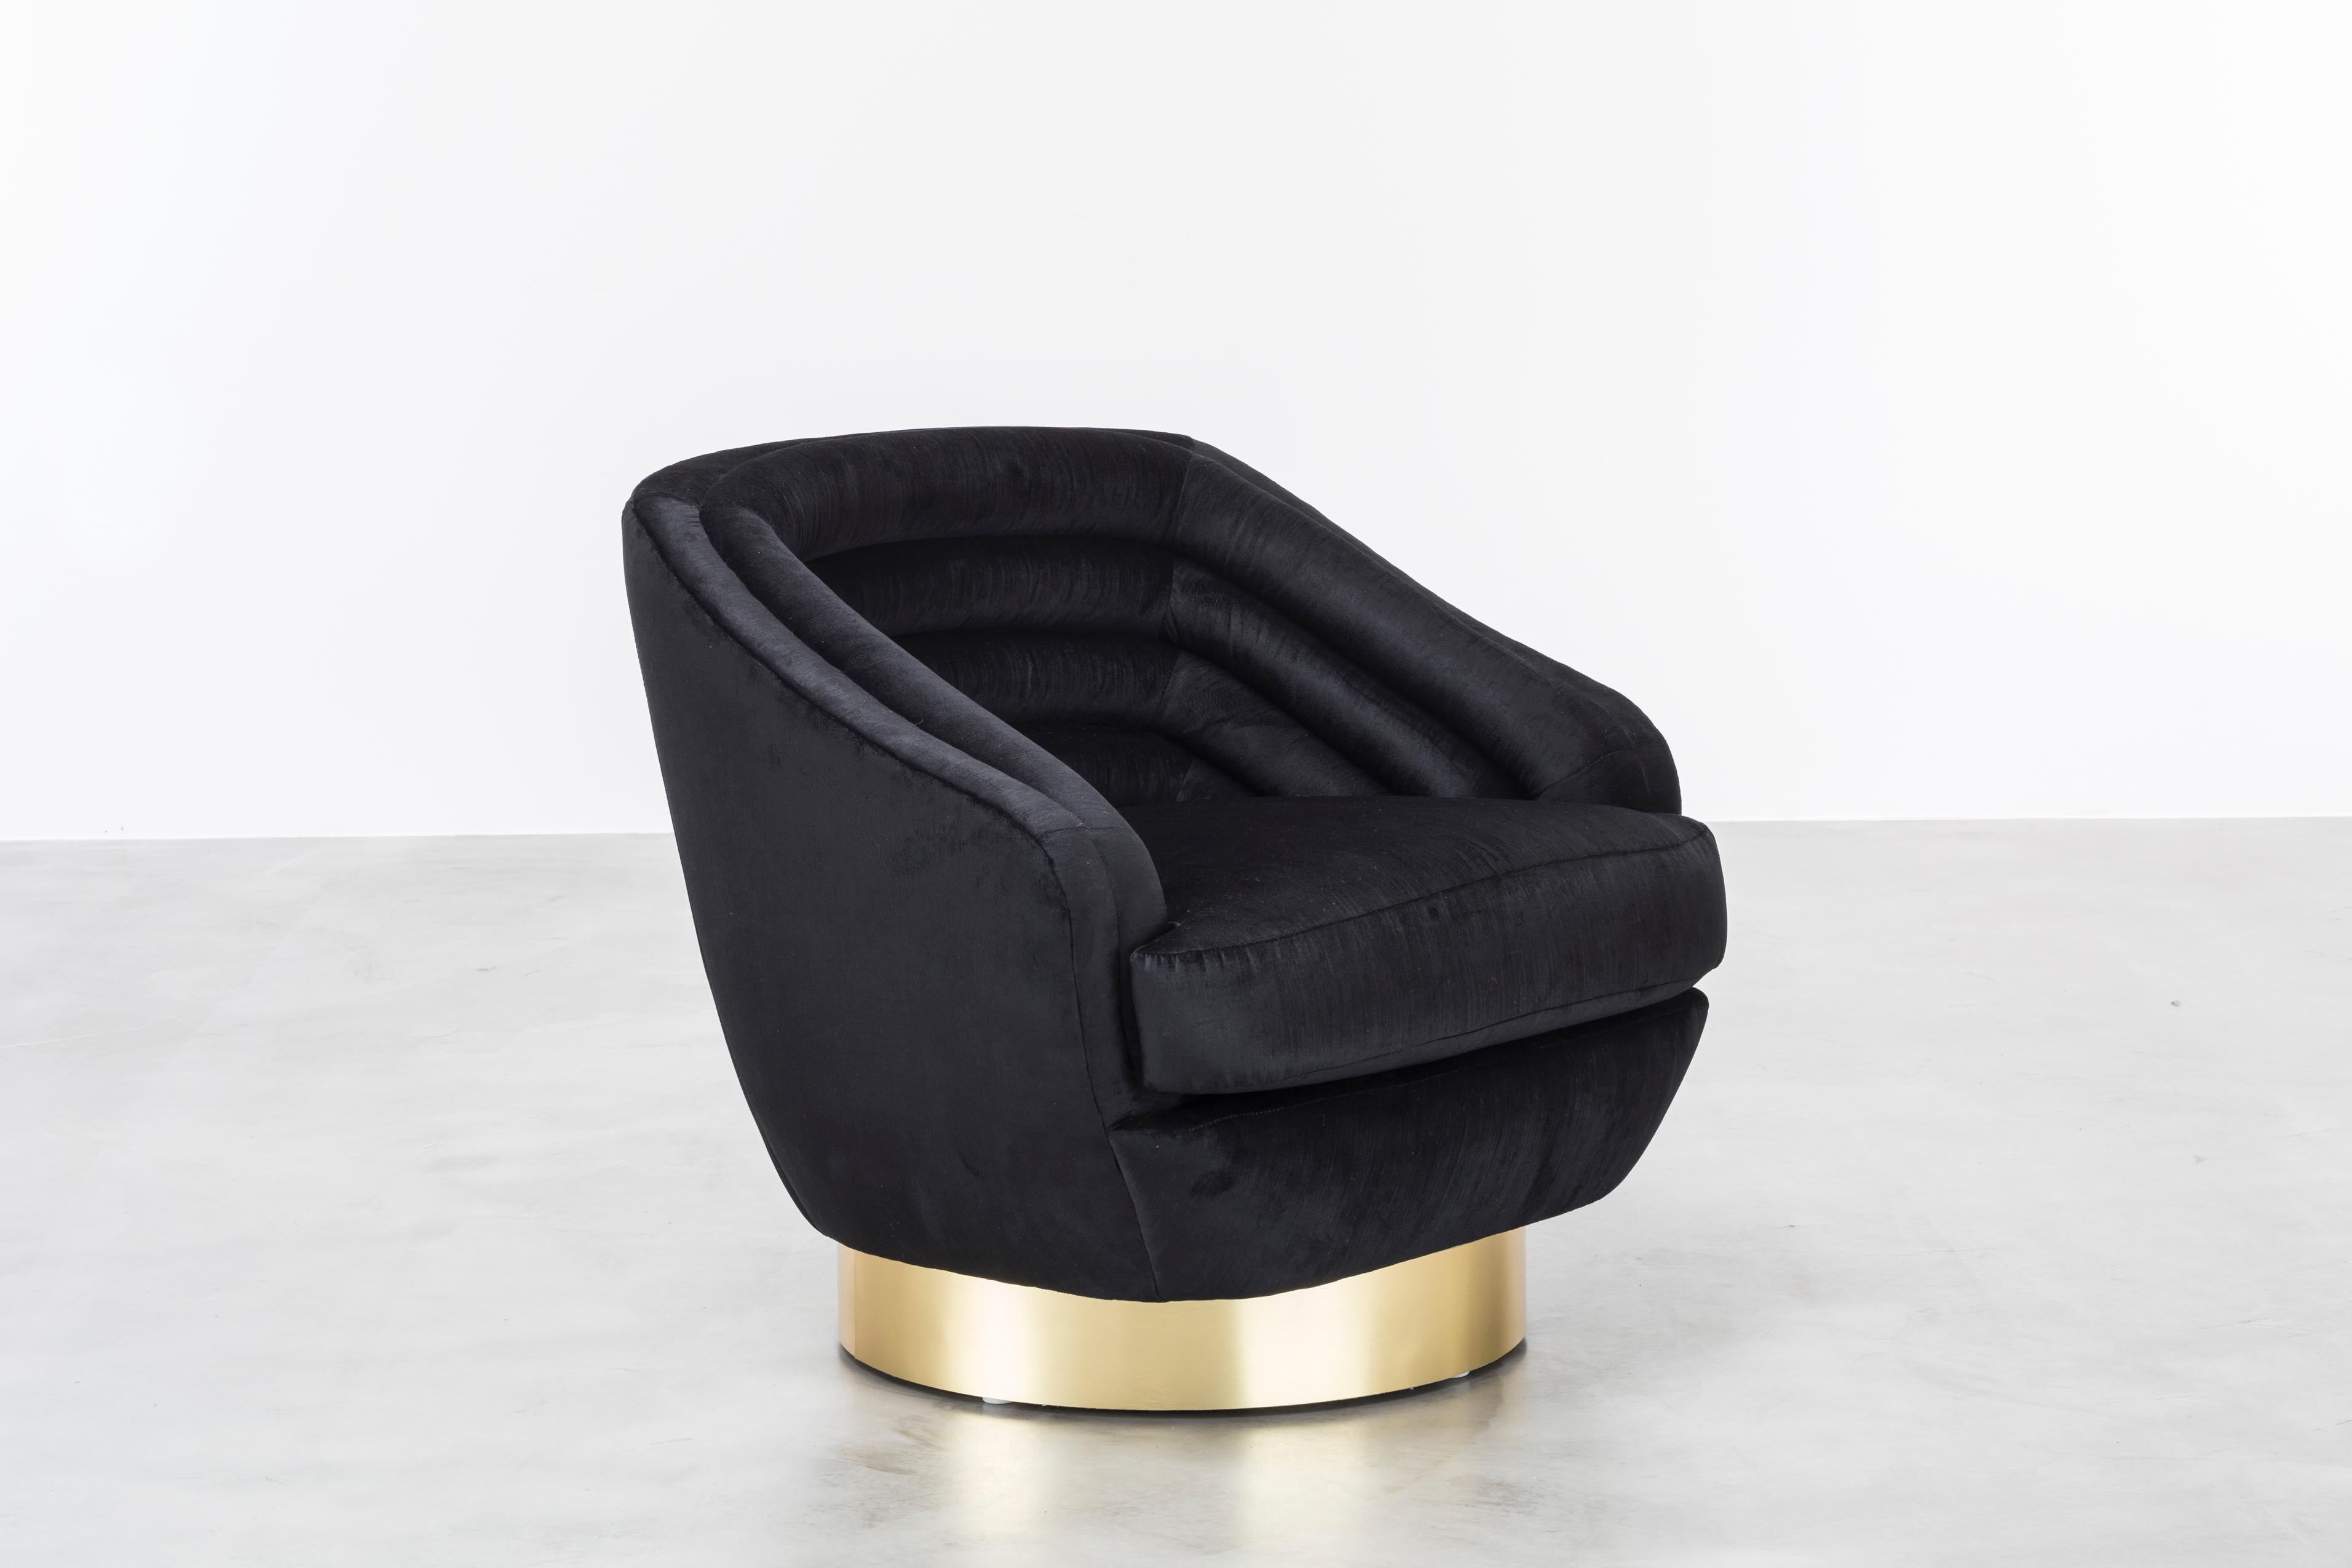 CHAise pivotante RAOUL - Chaise moderne en velours noir sur base pivotante en laiton

La chaise Raoul est un meuble étonnant inspiré de la Haute Couture de Jean Paul Gaultier. Cette chaise présente des canaux horizontaux en velours qui créent un